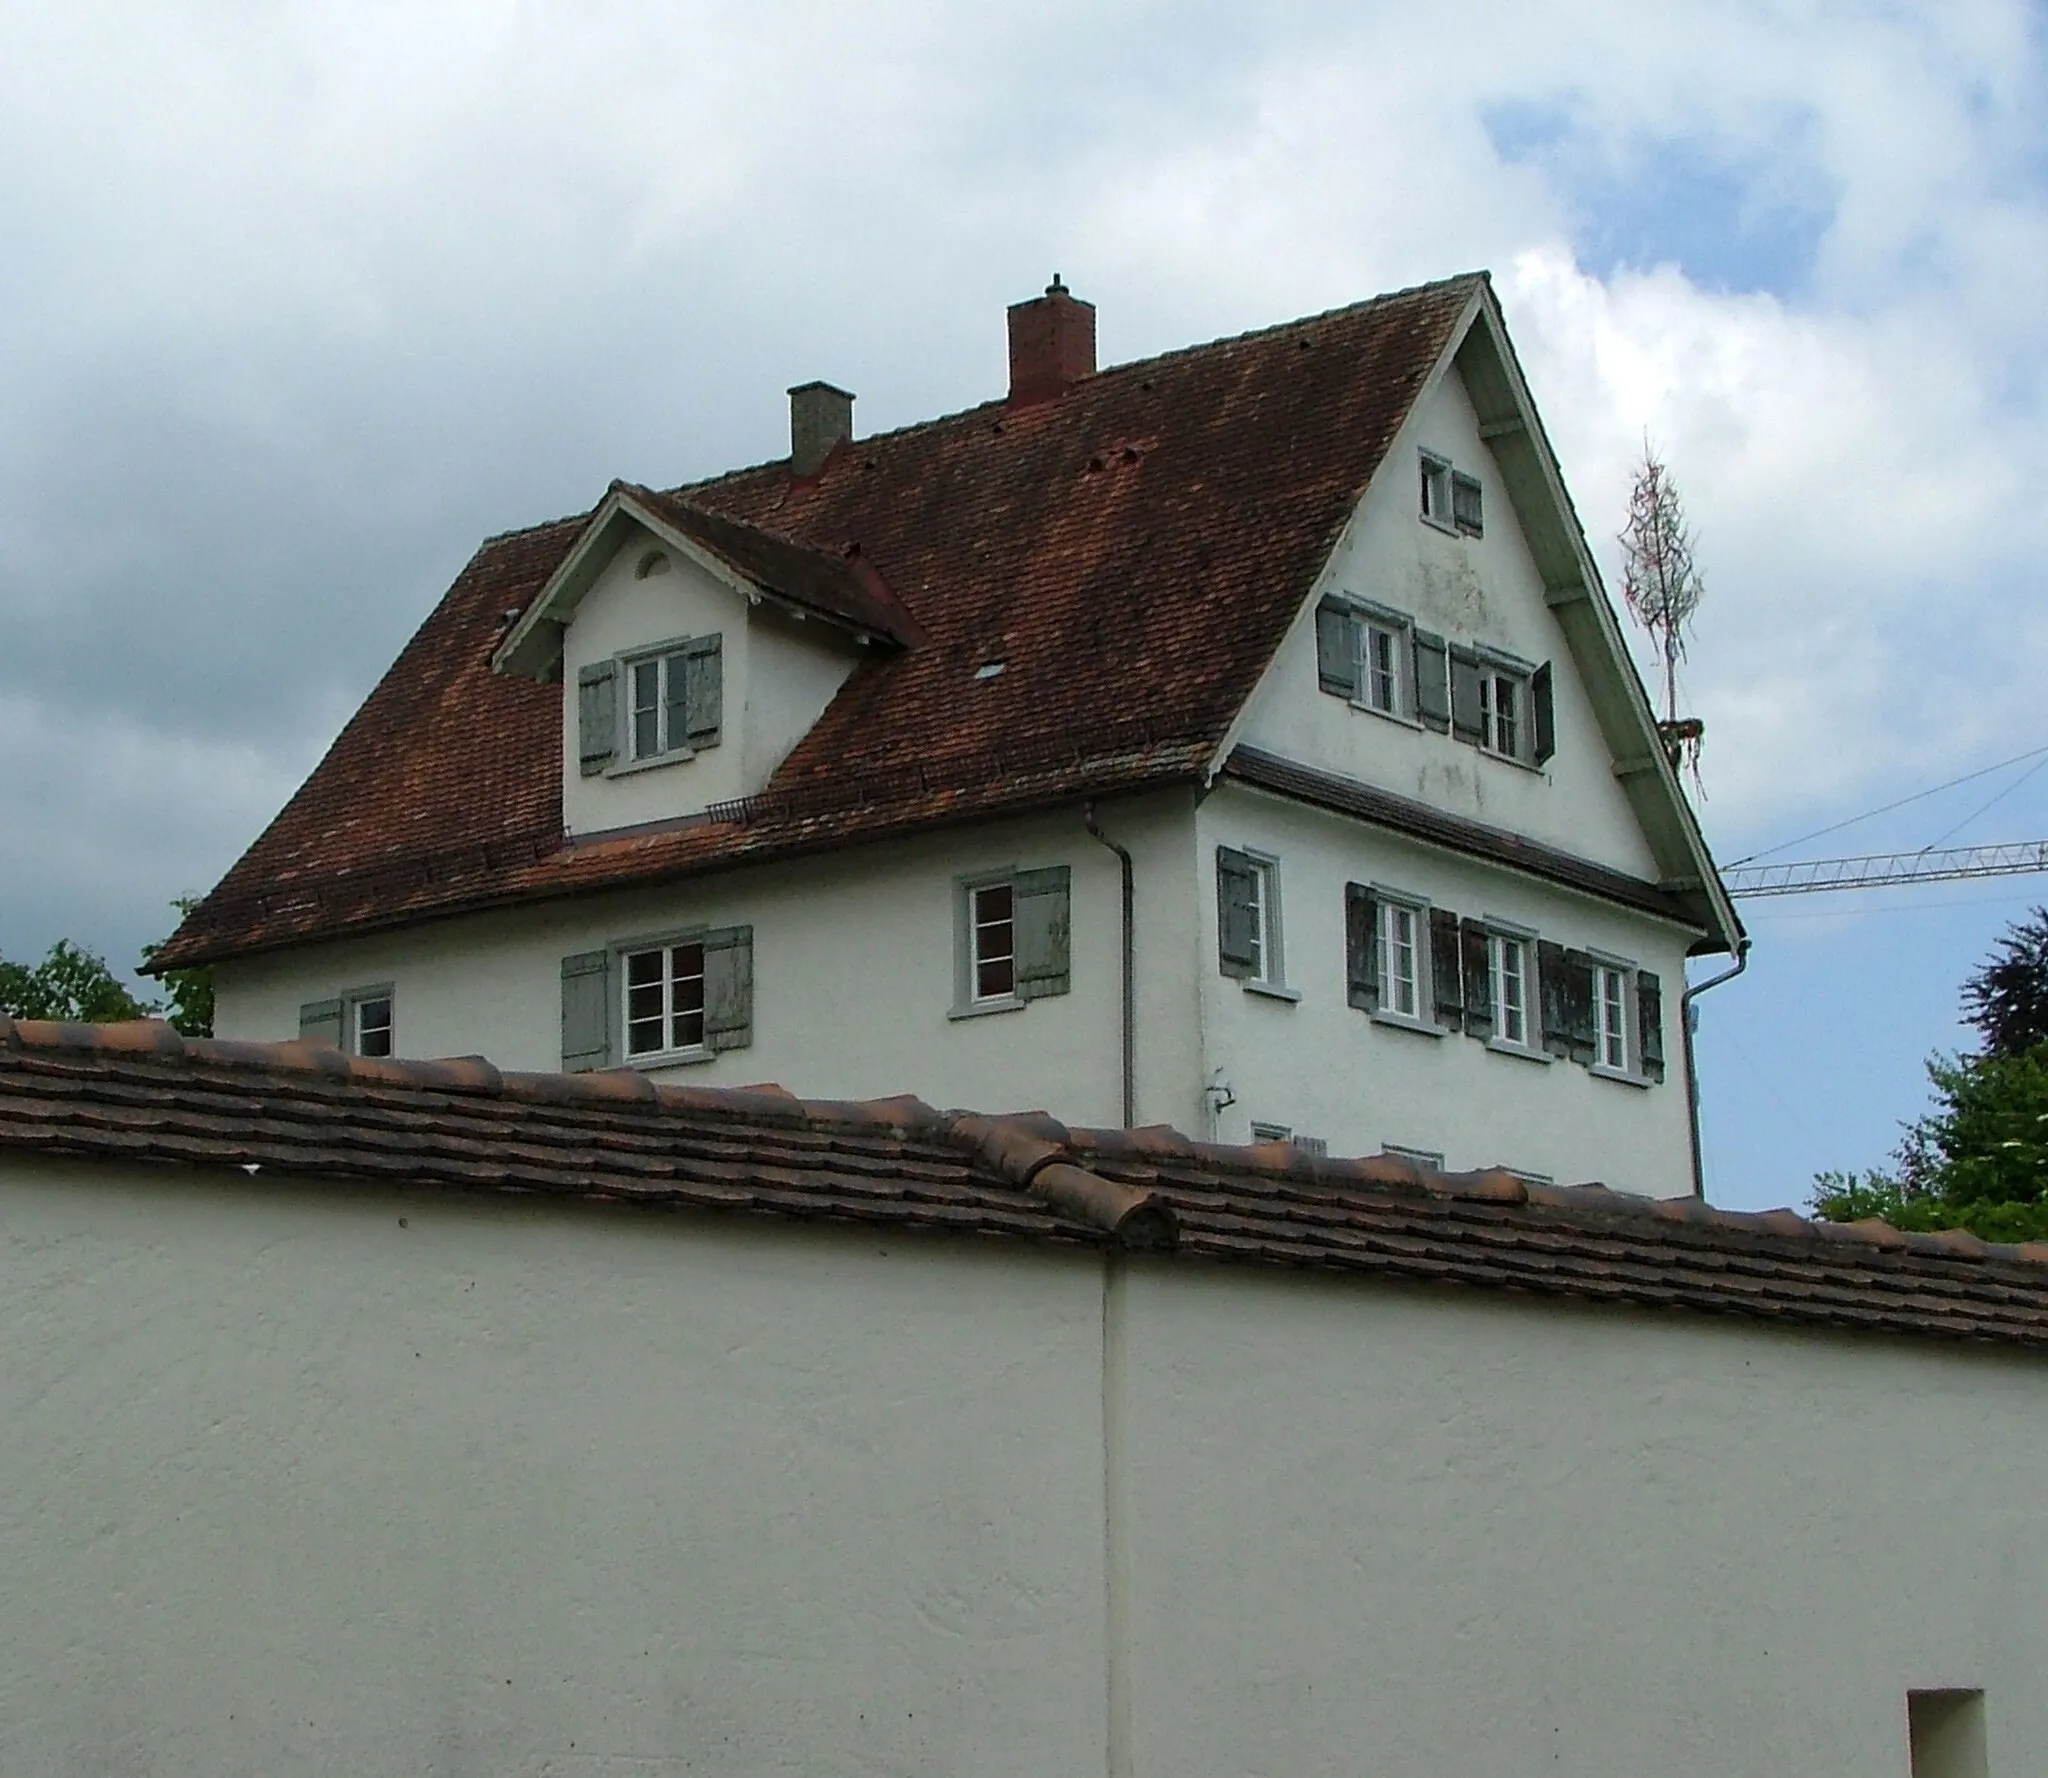 Kuva kohteesta Tübingen